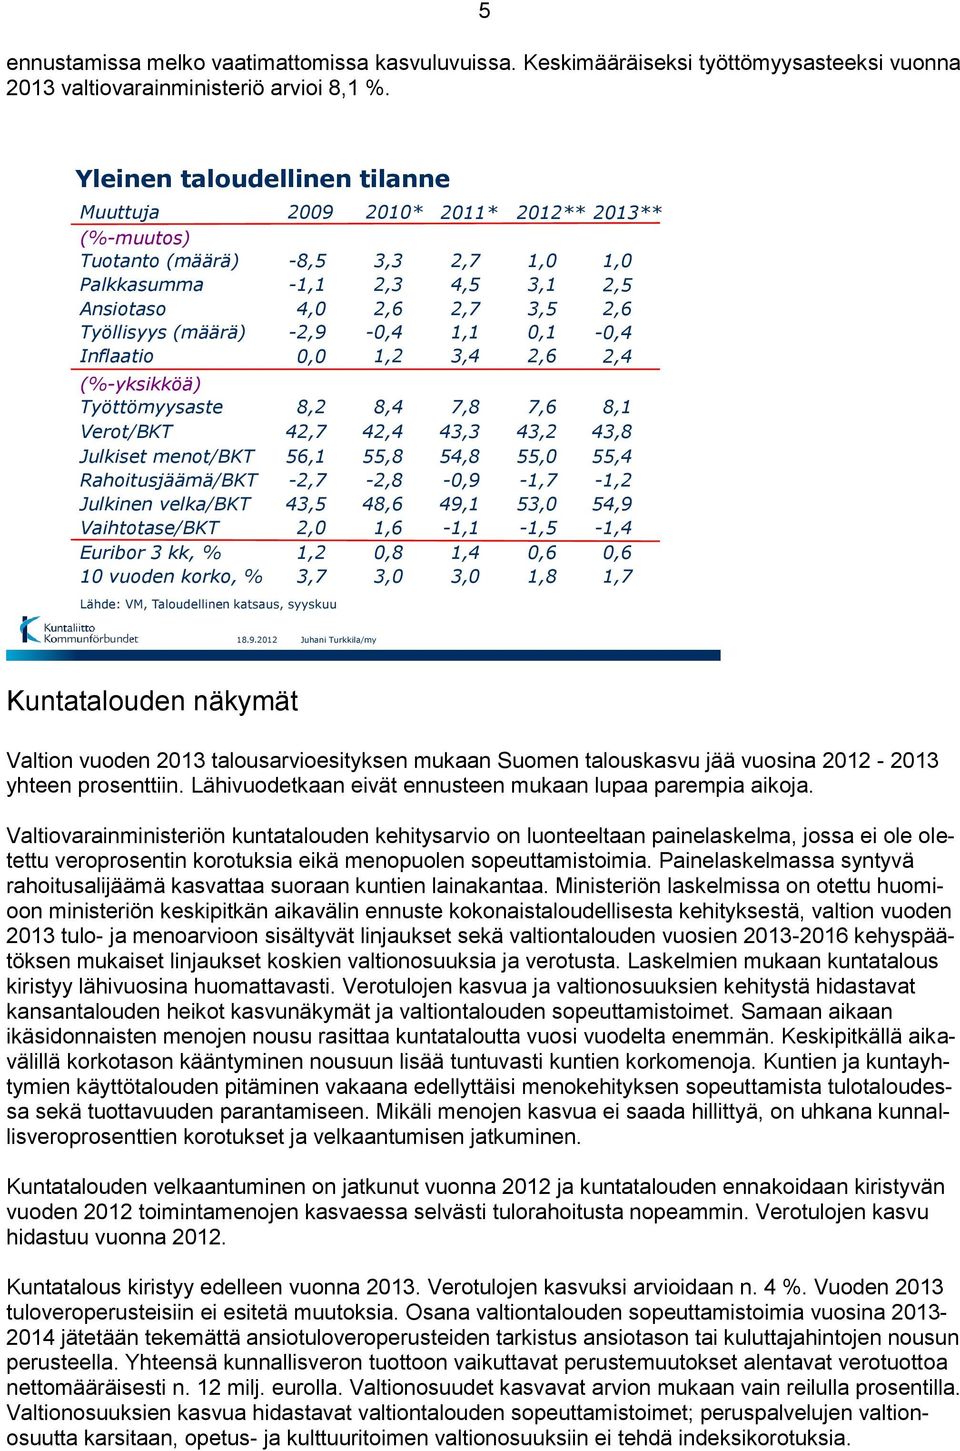 Julkinen velka/bkt Vaihtotase/BKT Euribor 3 kk, % 10 vuoden korko, % 2009-8,5-1,1 4,0-2,9 0,0 8,2 42,7 56,1-2,7 43,5 2,0 1,2 3,7 Lähde: VM, Taloudellinen katsaus, syyskuu 2010* 3,3 2,3 2,6-0,4 1,2